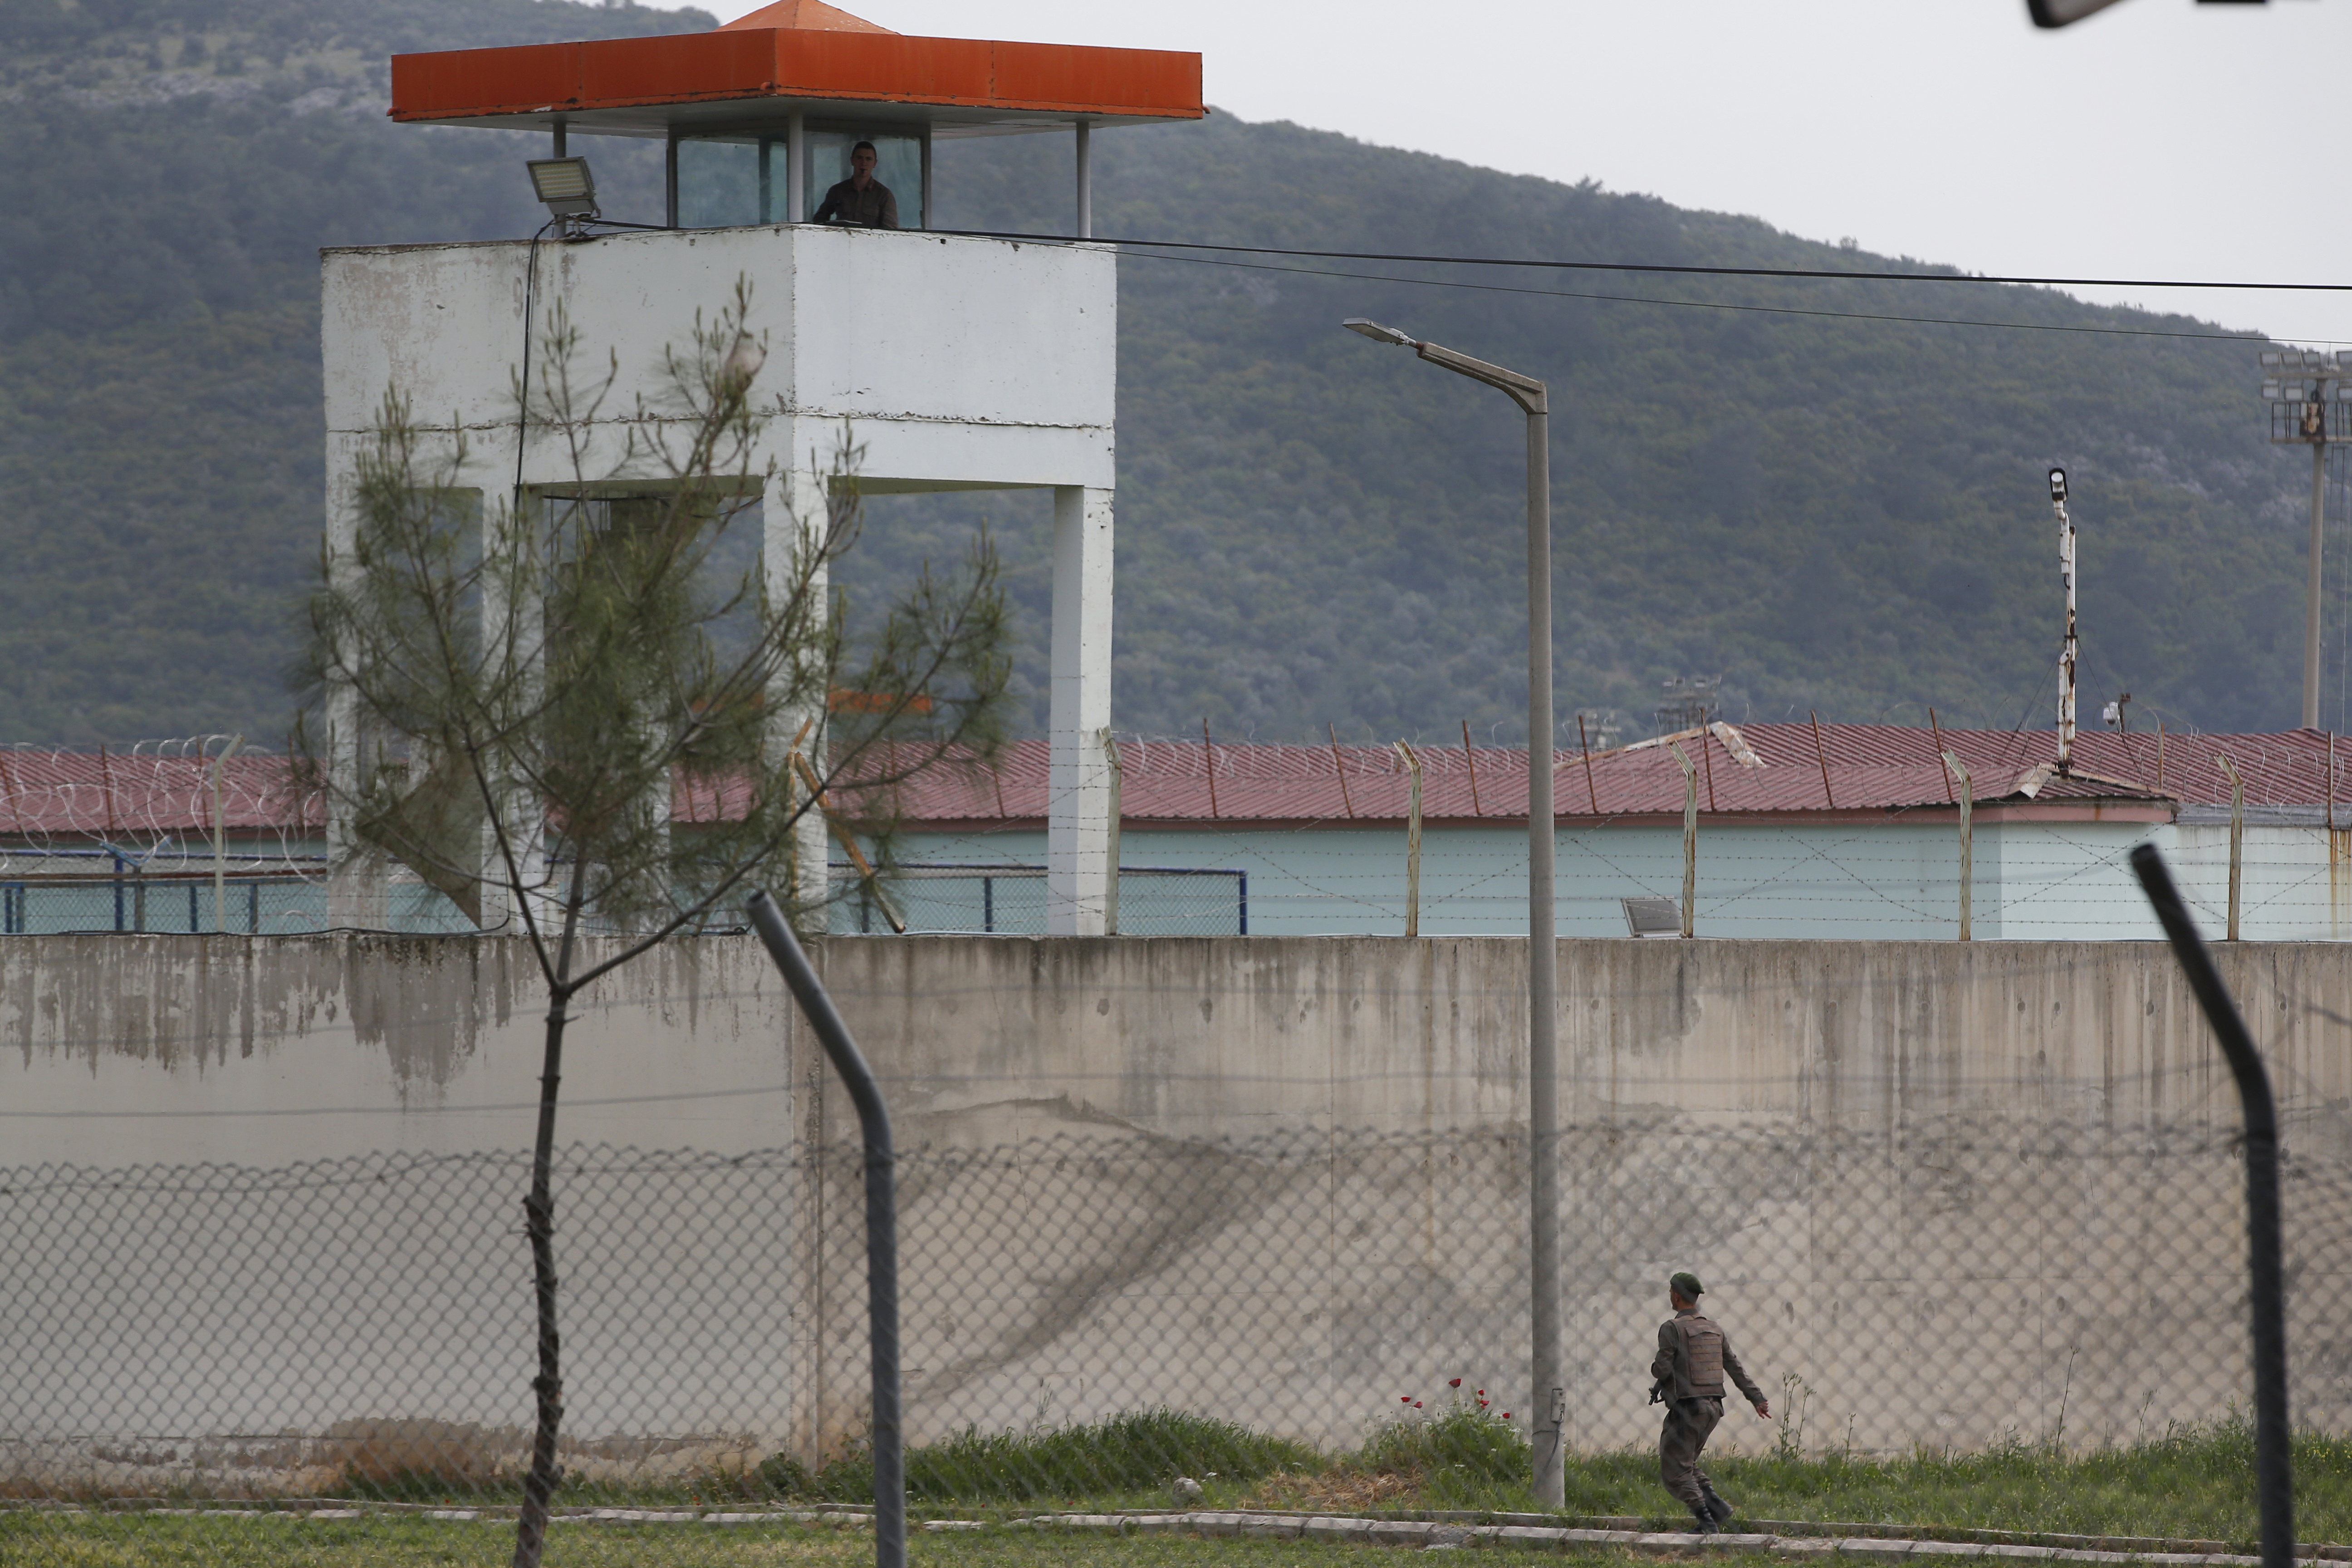 Außenansicht eines Gefängnisses in der Türkei. Ein Wachmann patrouilliert.